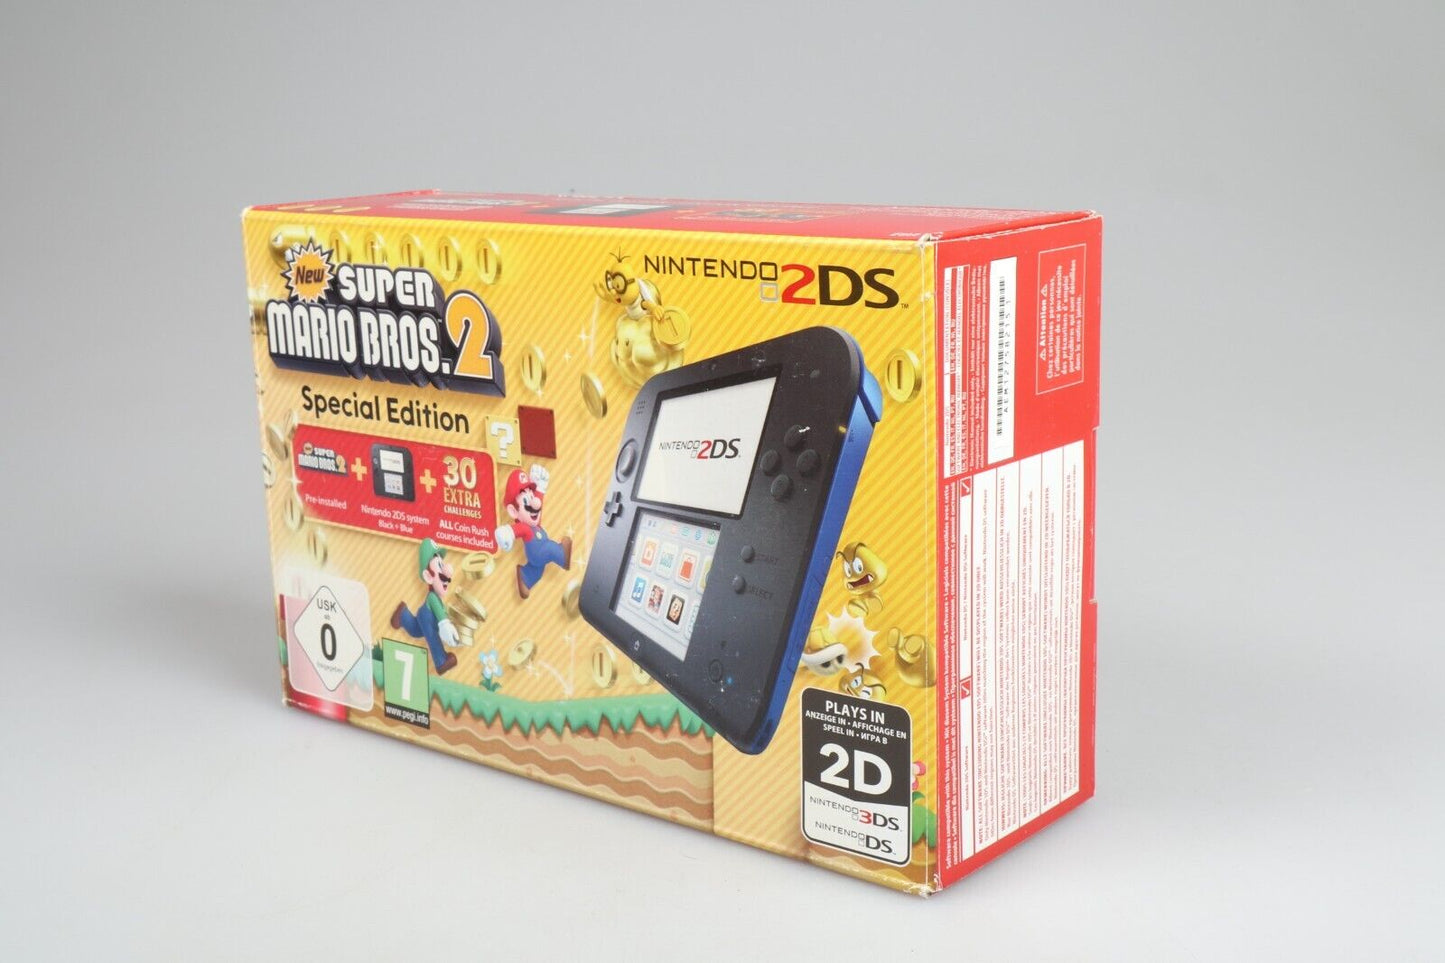 Nintendo 2DS |  New Super Mario Bros 2 Special Edition Handheld